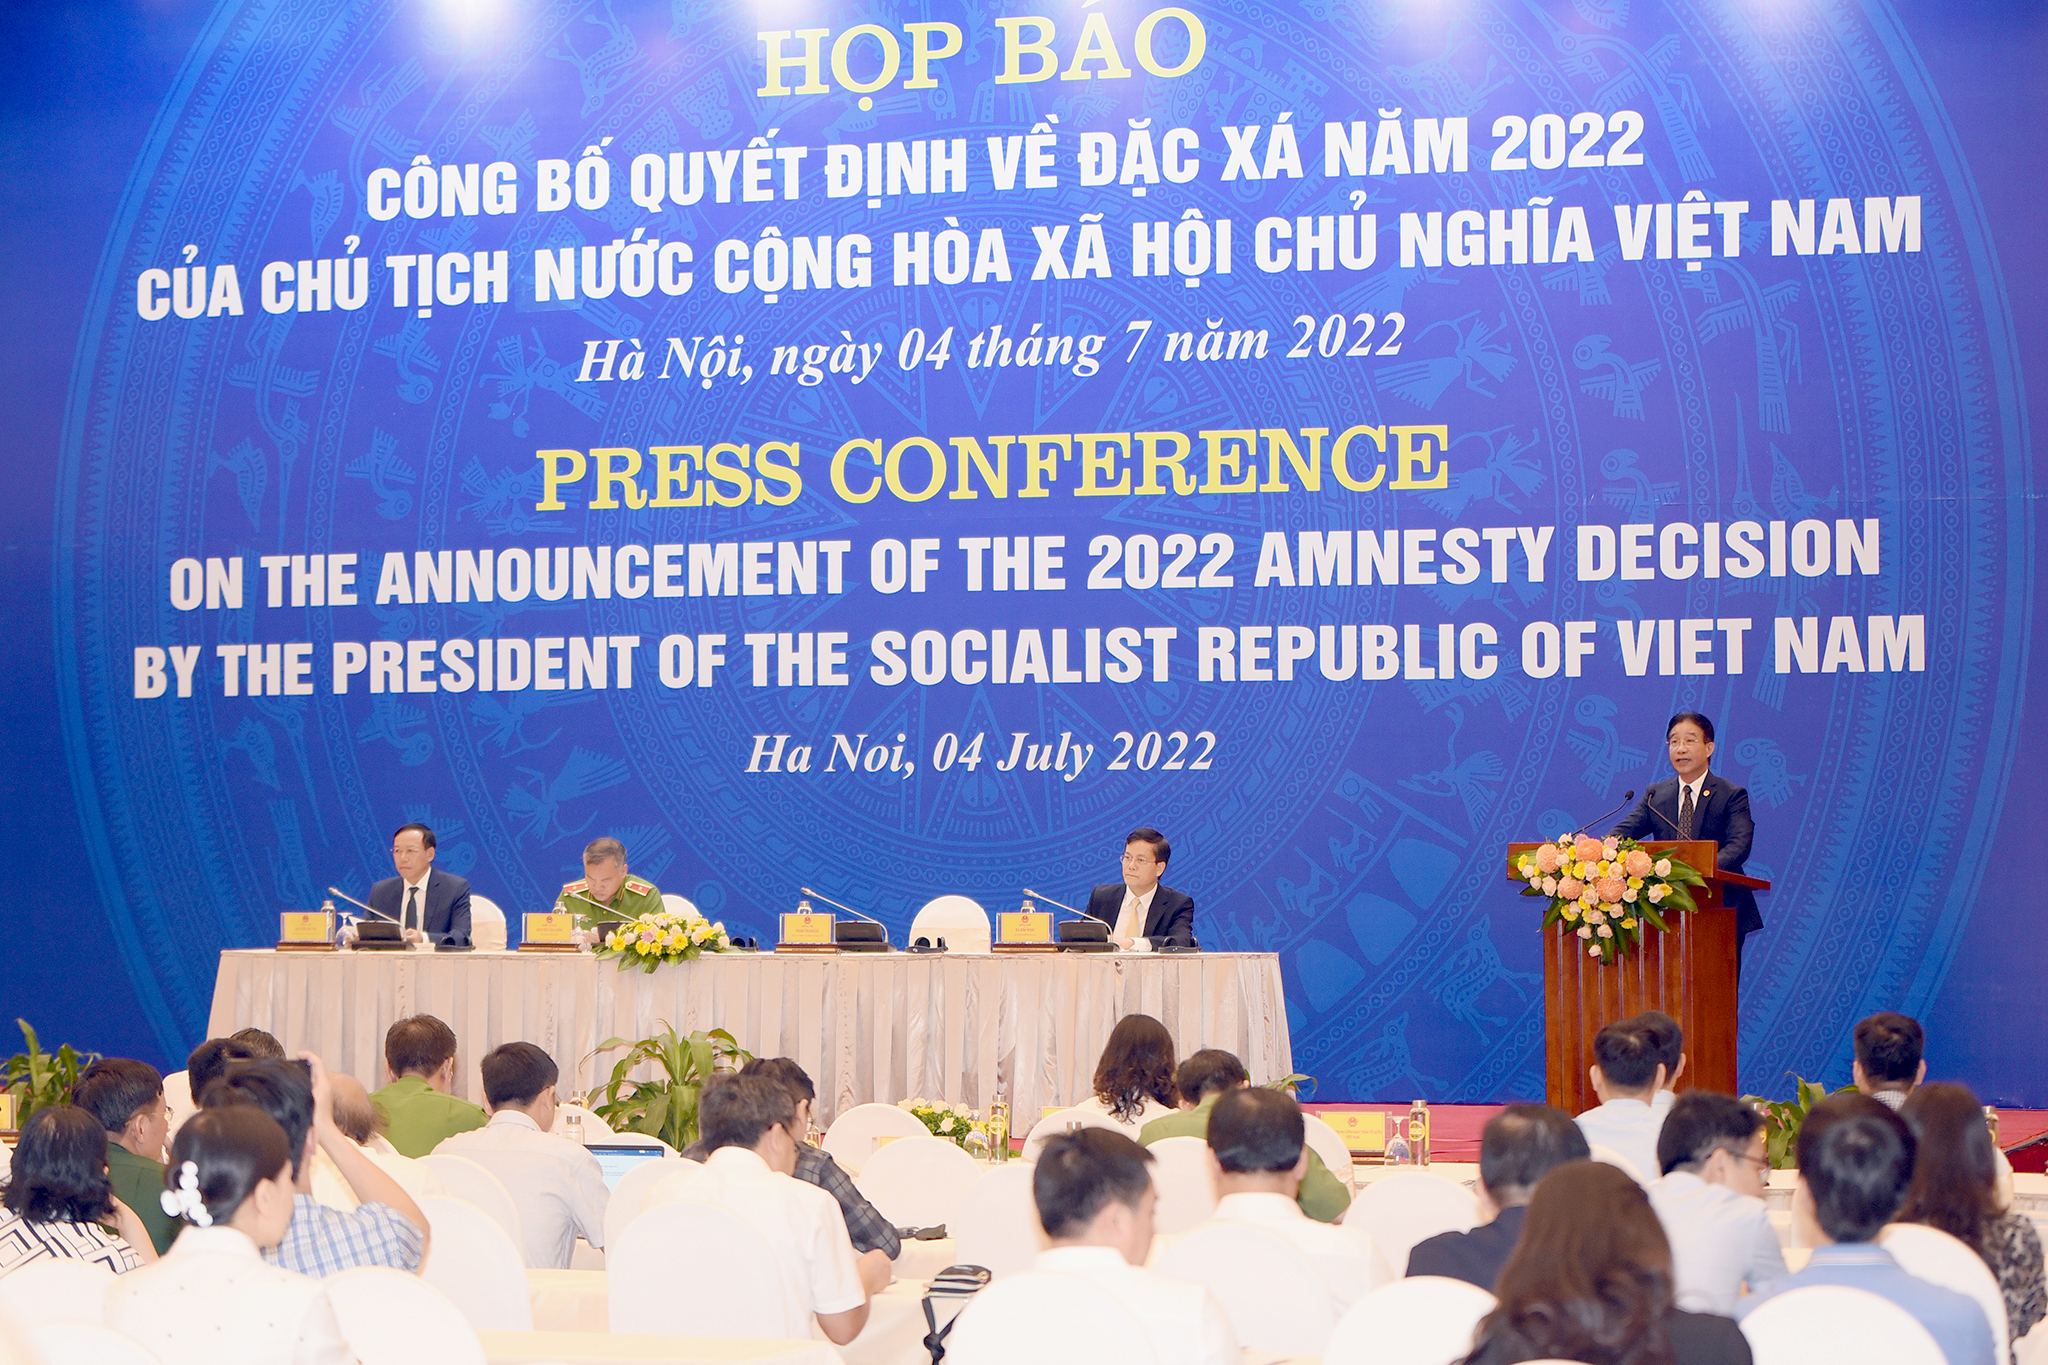 Quyết định về việc đặc xá năm 2022 của Chủ tịch nước Nguyễn Xuân Phúc, nhân dịp kỷ niệm Quốc khánh 2/9, được công bố sáng 4/7. Ảnh: Tùng Đinh.